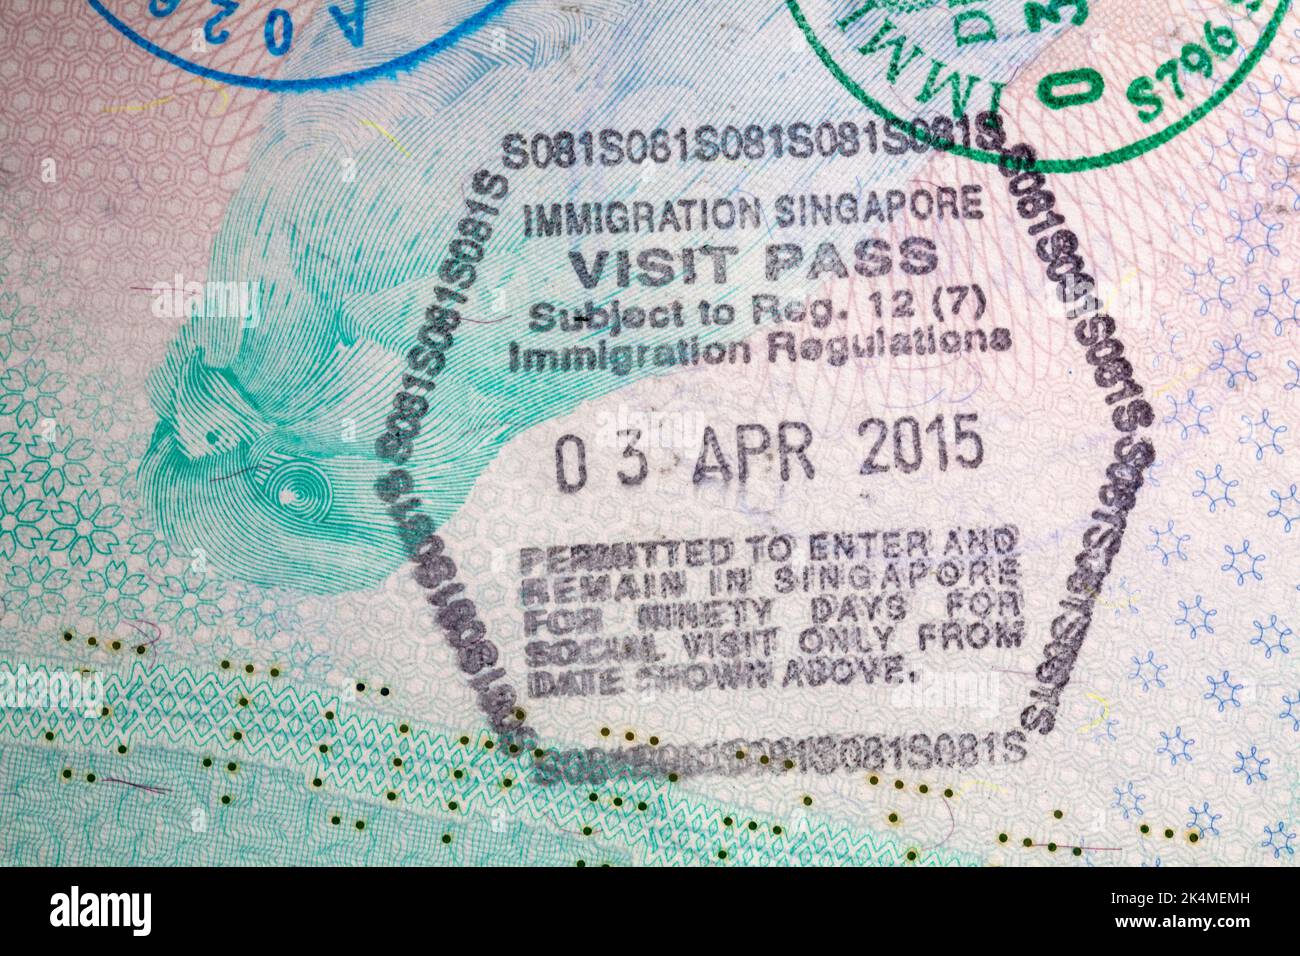 Immigrazione Singapore Visit Pass 03 Apr 2015 timbro in passaporto britannico Foto Stock